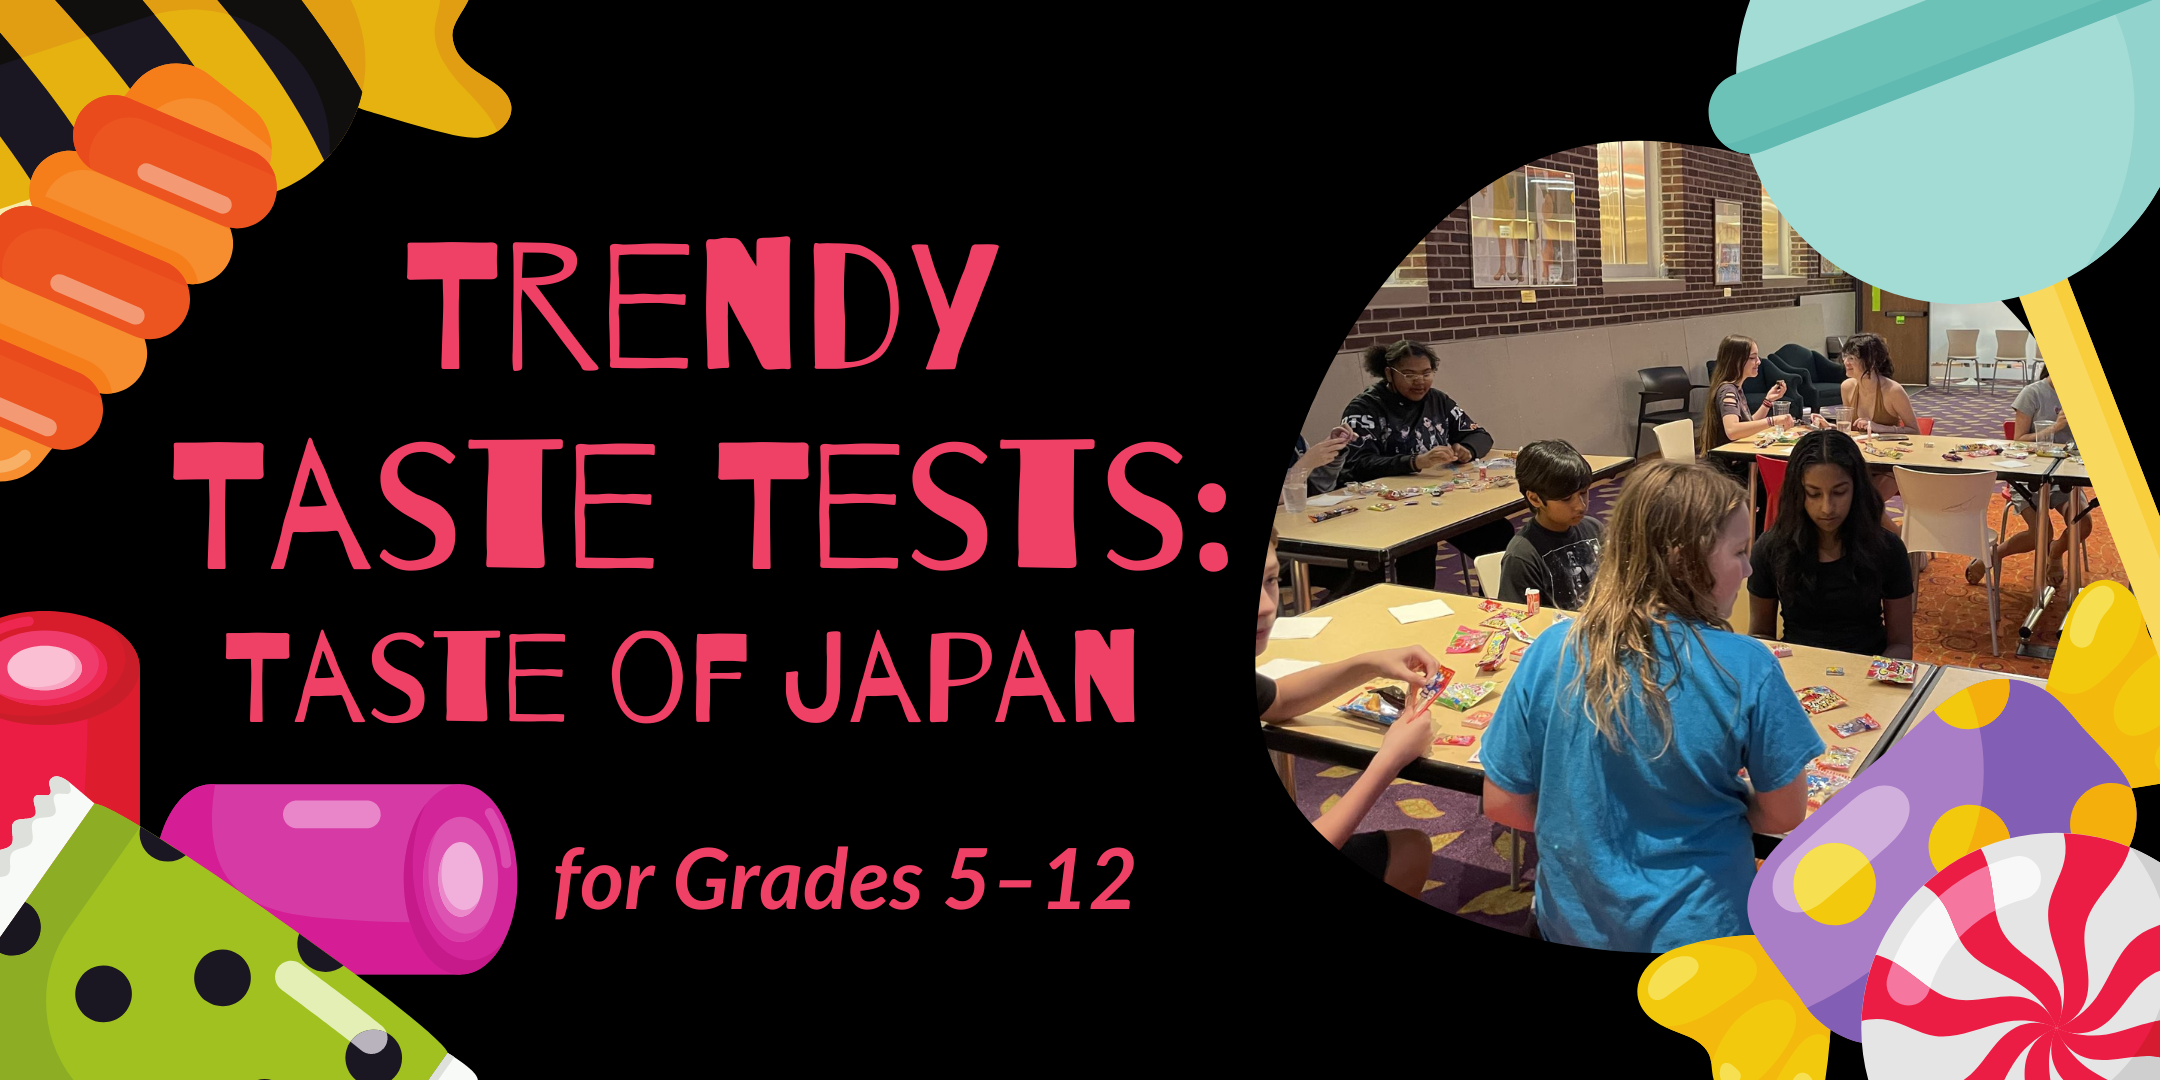 image of "Trendy Taste Tests: Taste of Japan"